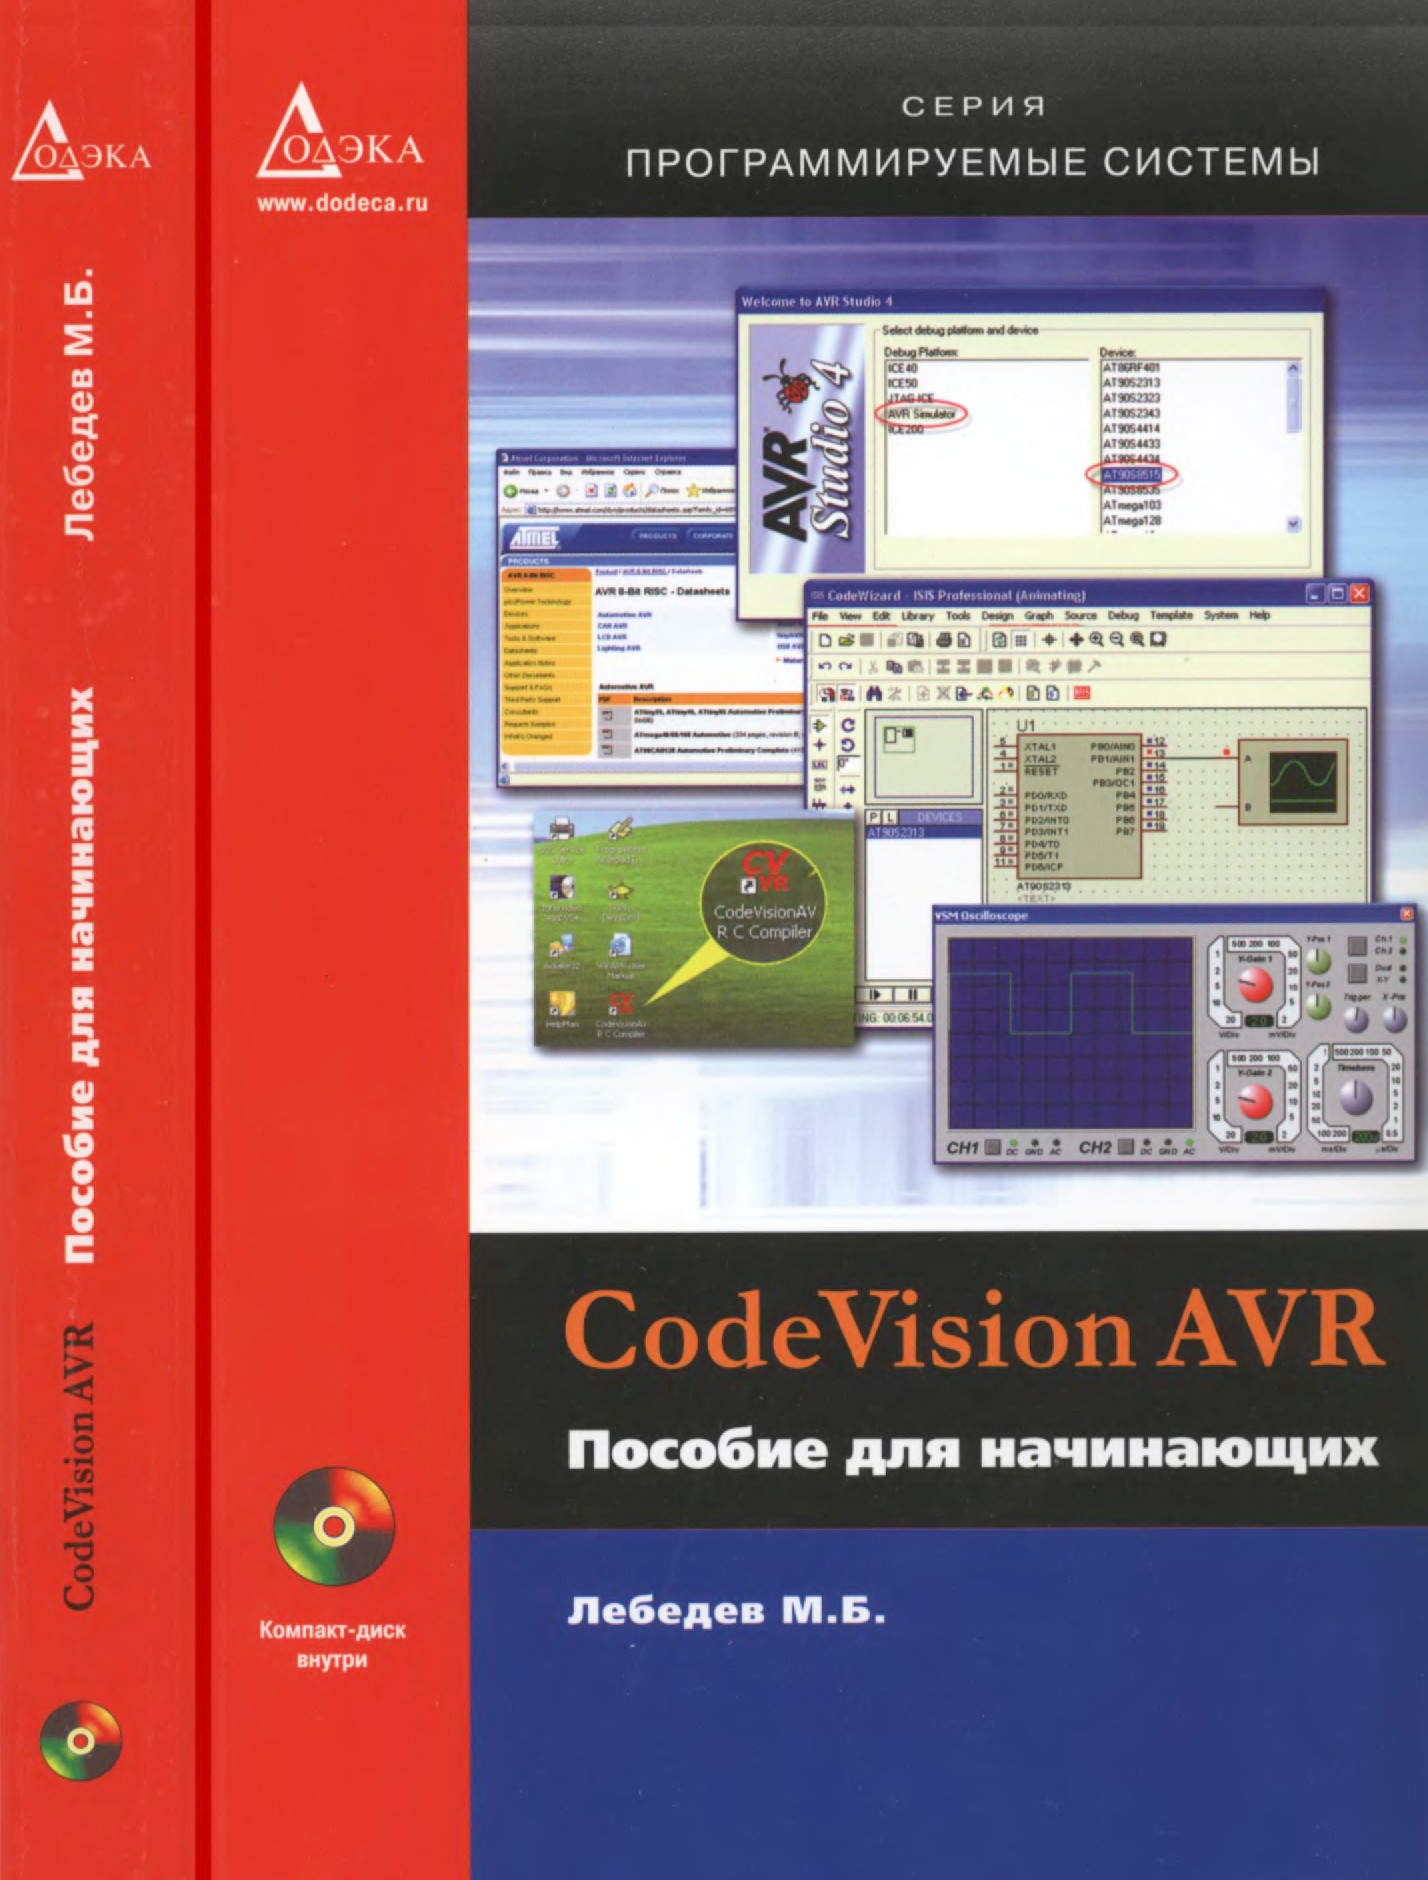 CodeVision AVR. Пособие для начинающих